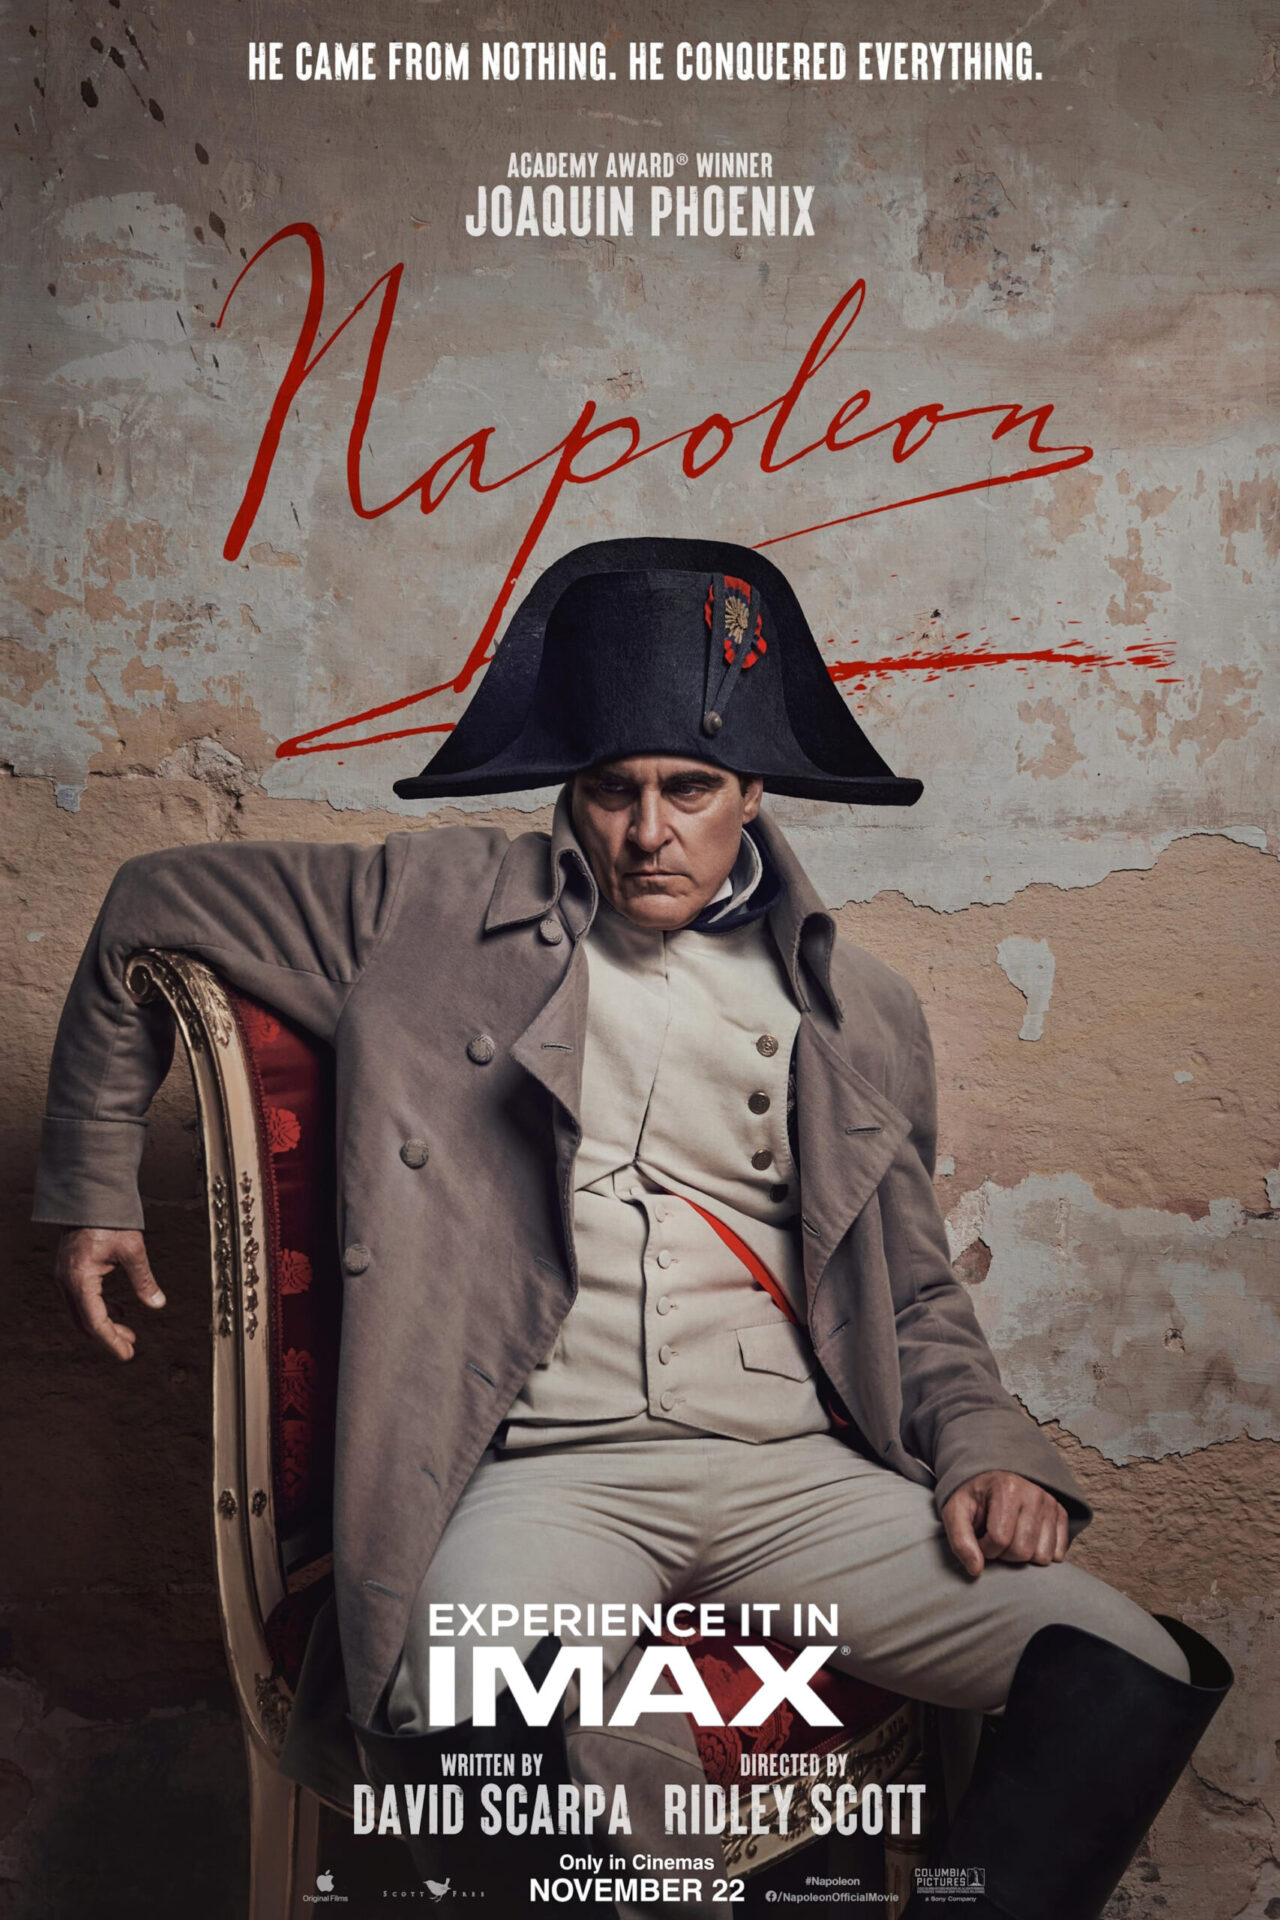 Napoléon Poster